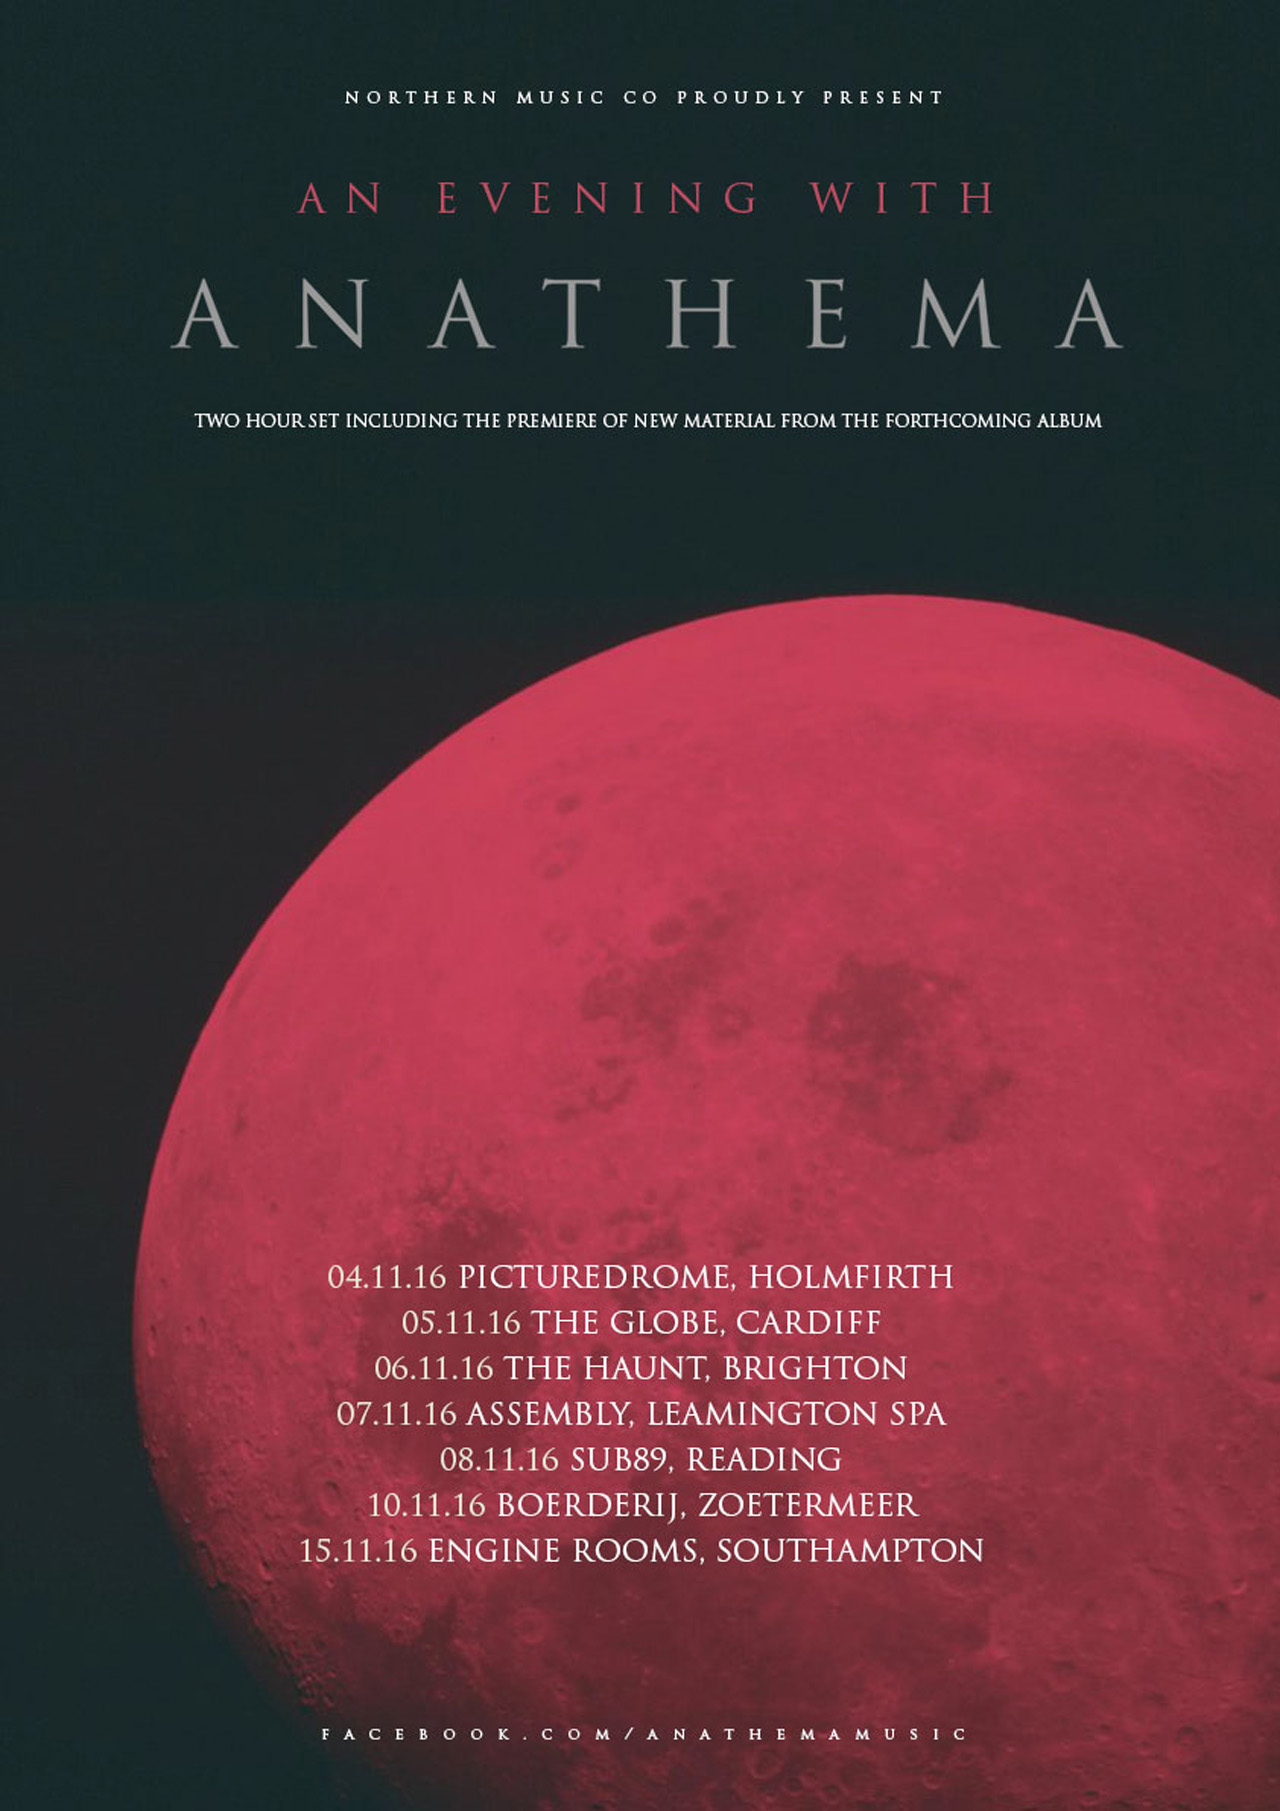 anathema tour dates